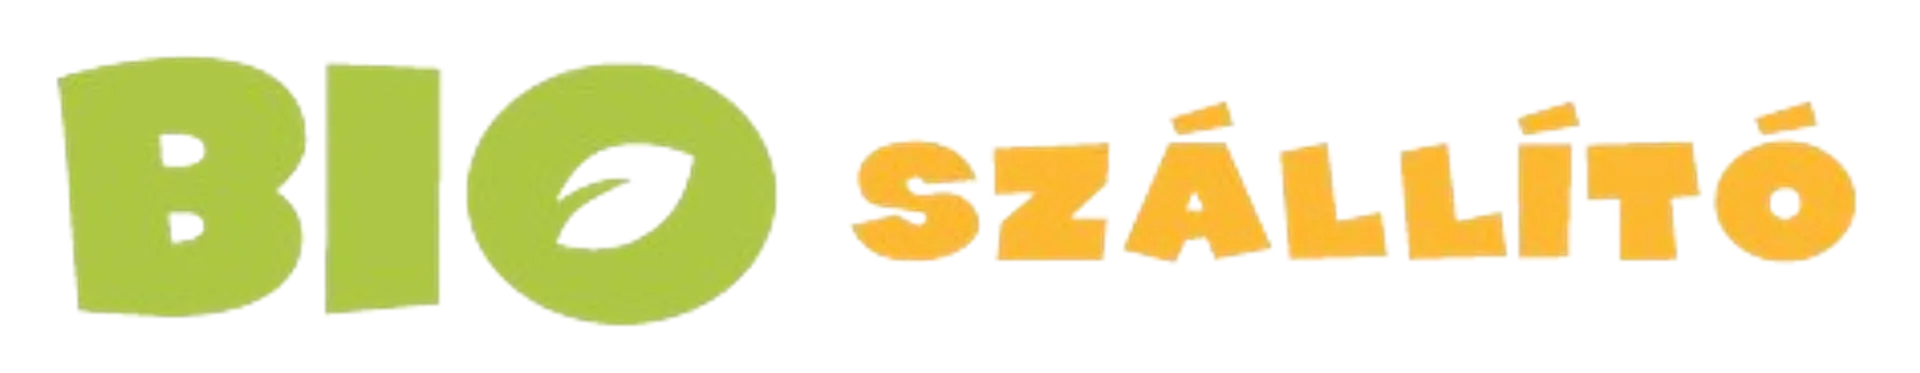 BIOSZÁLLÍTÓ logo